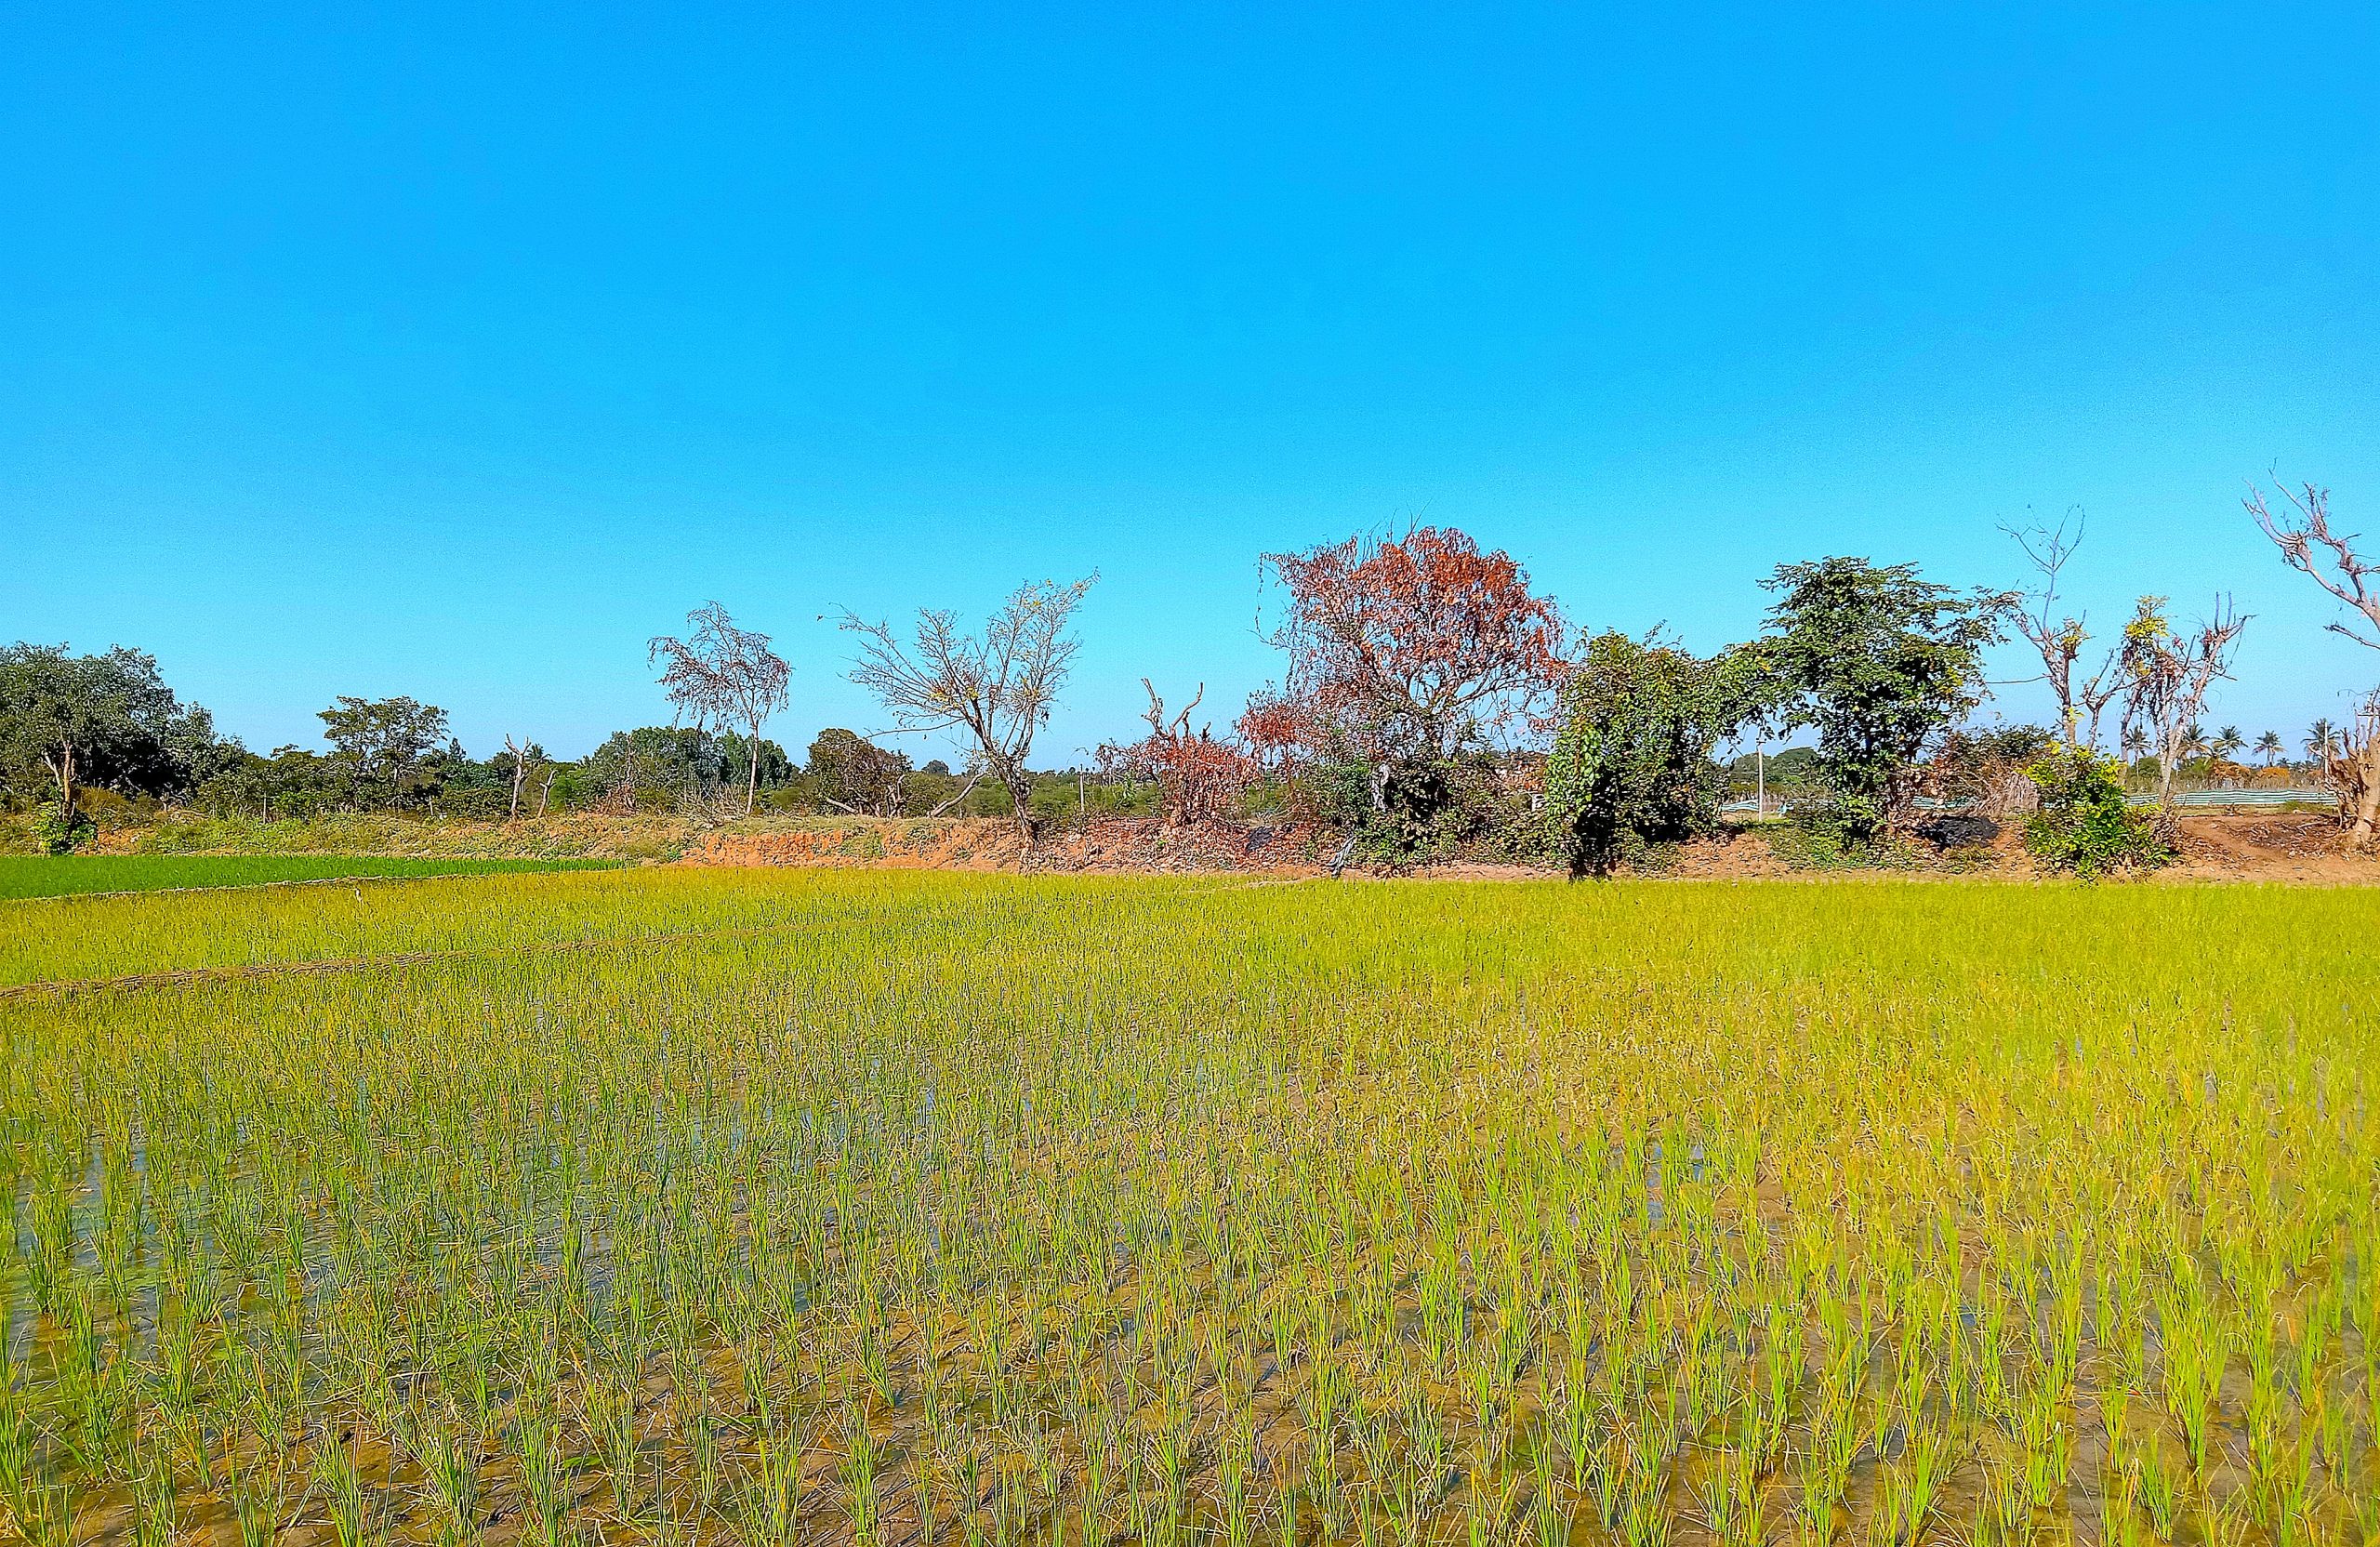 A paddy field